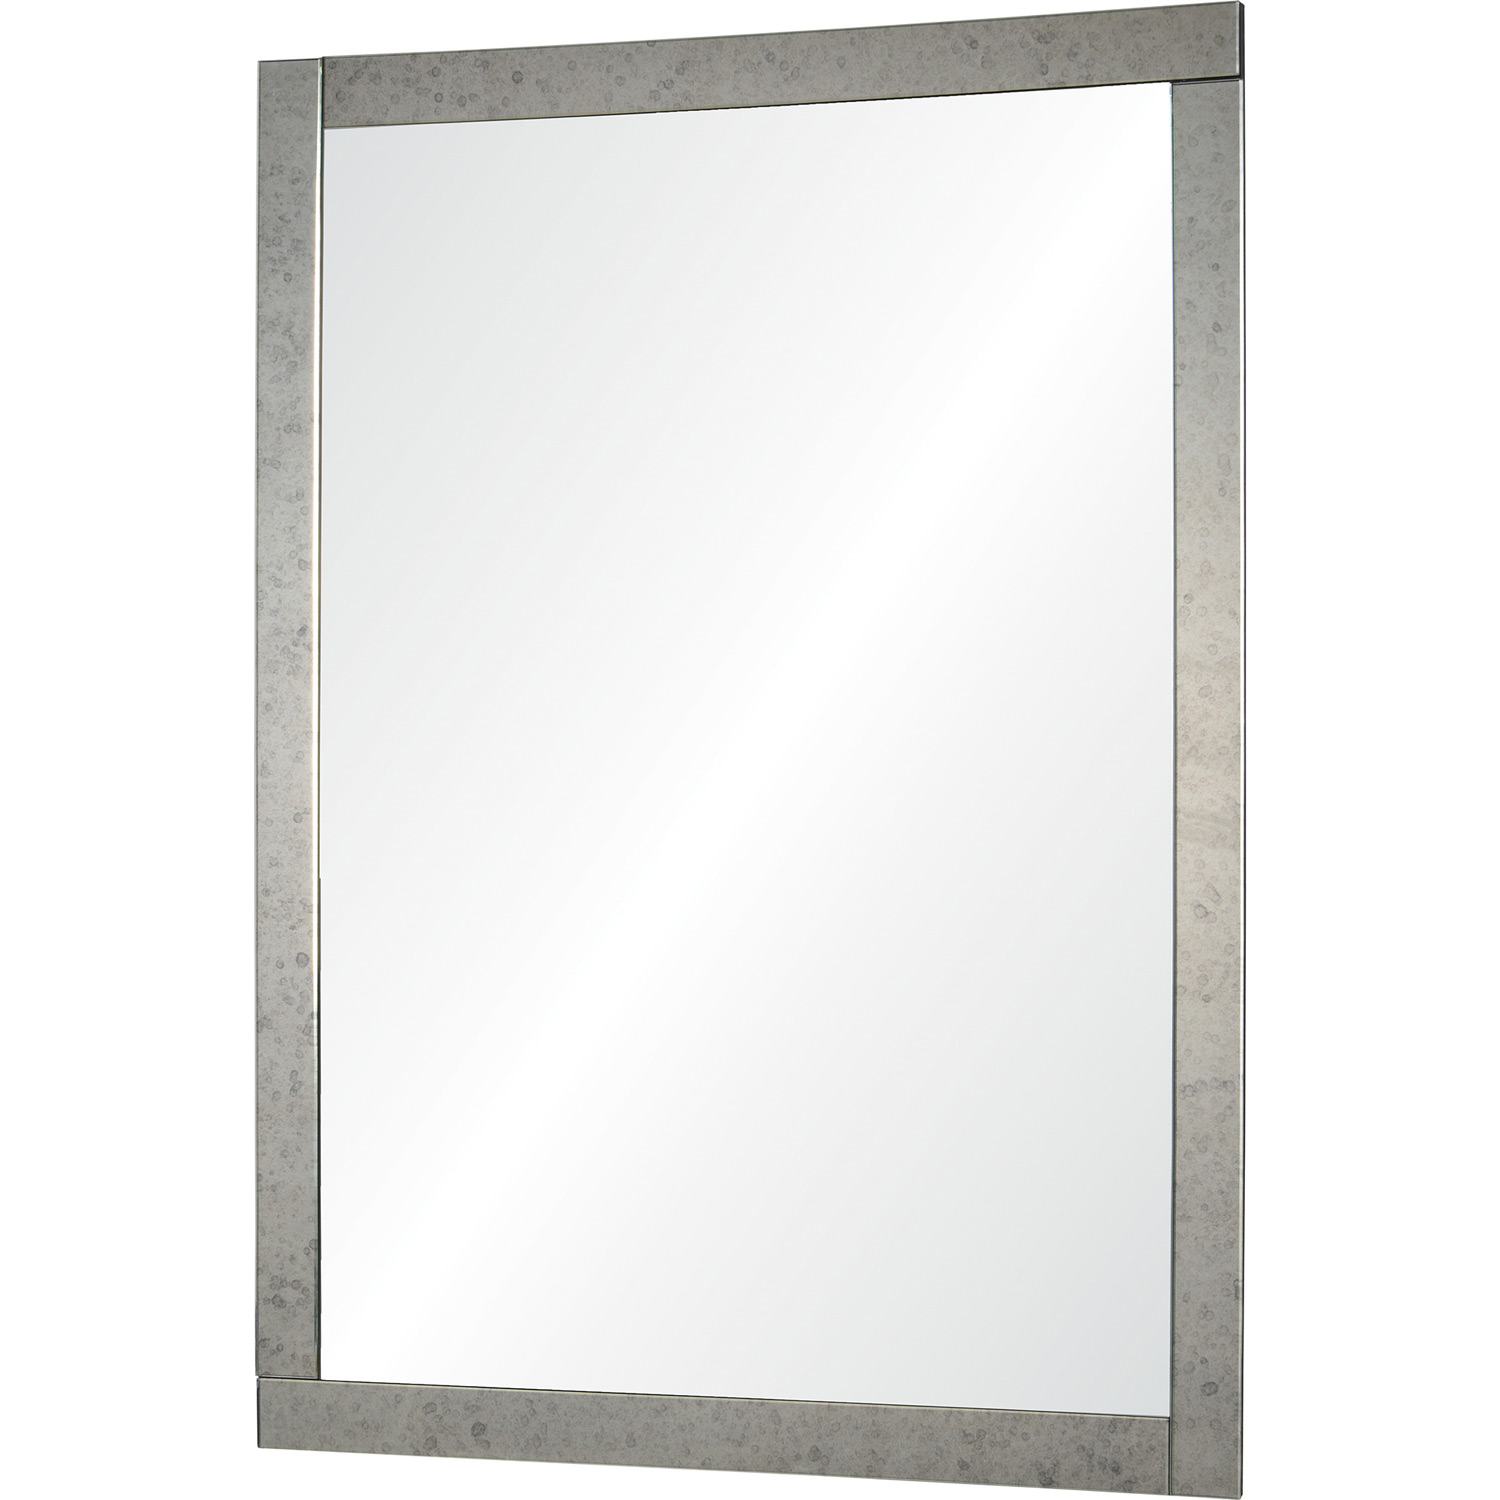 Ren-Wil Atara Rectangle Mirror - Antique mirror